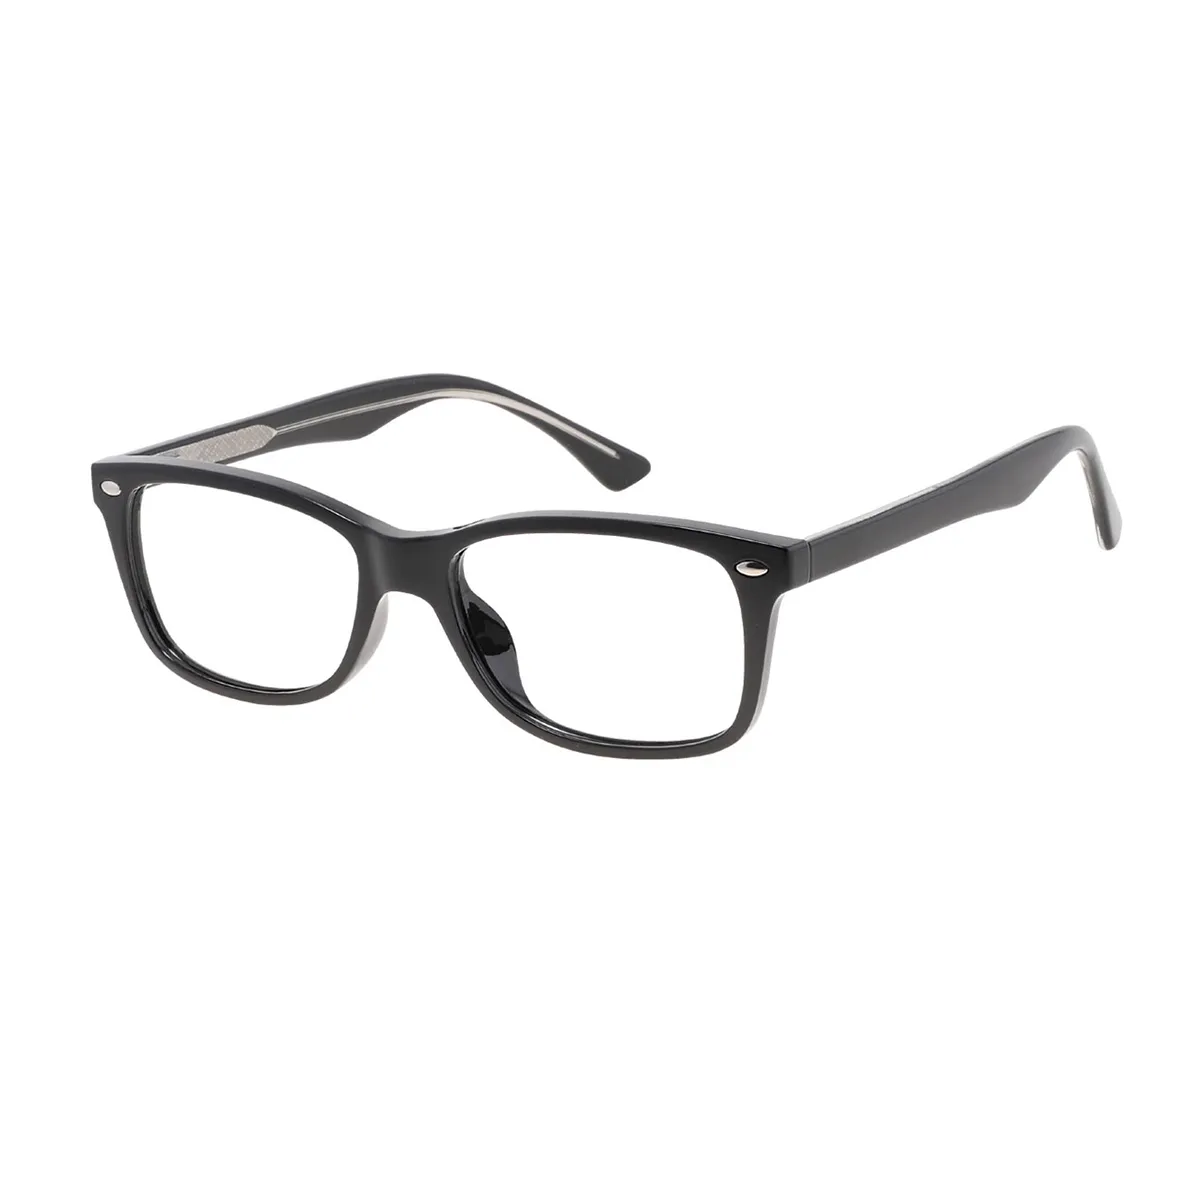 Sonya - Rectangle Black Glasses for Men & Women